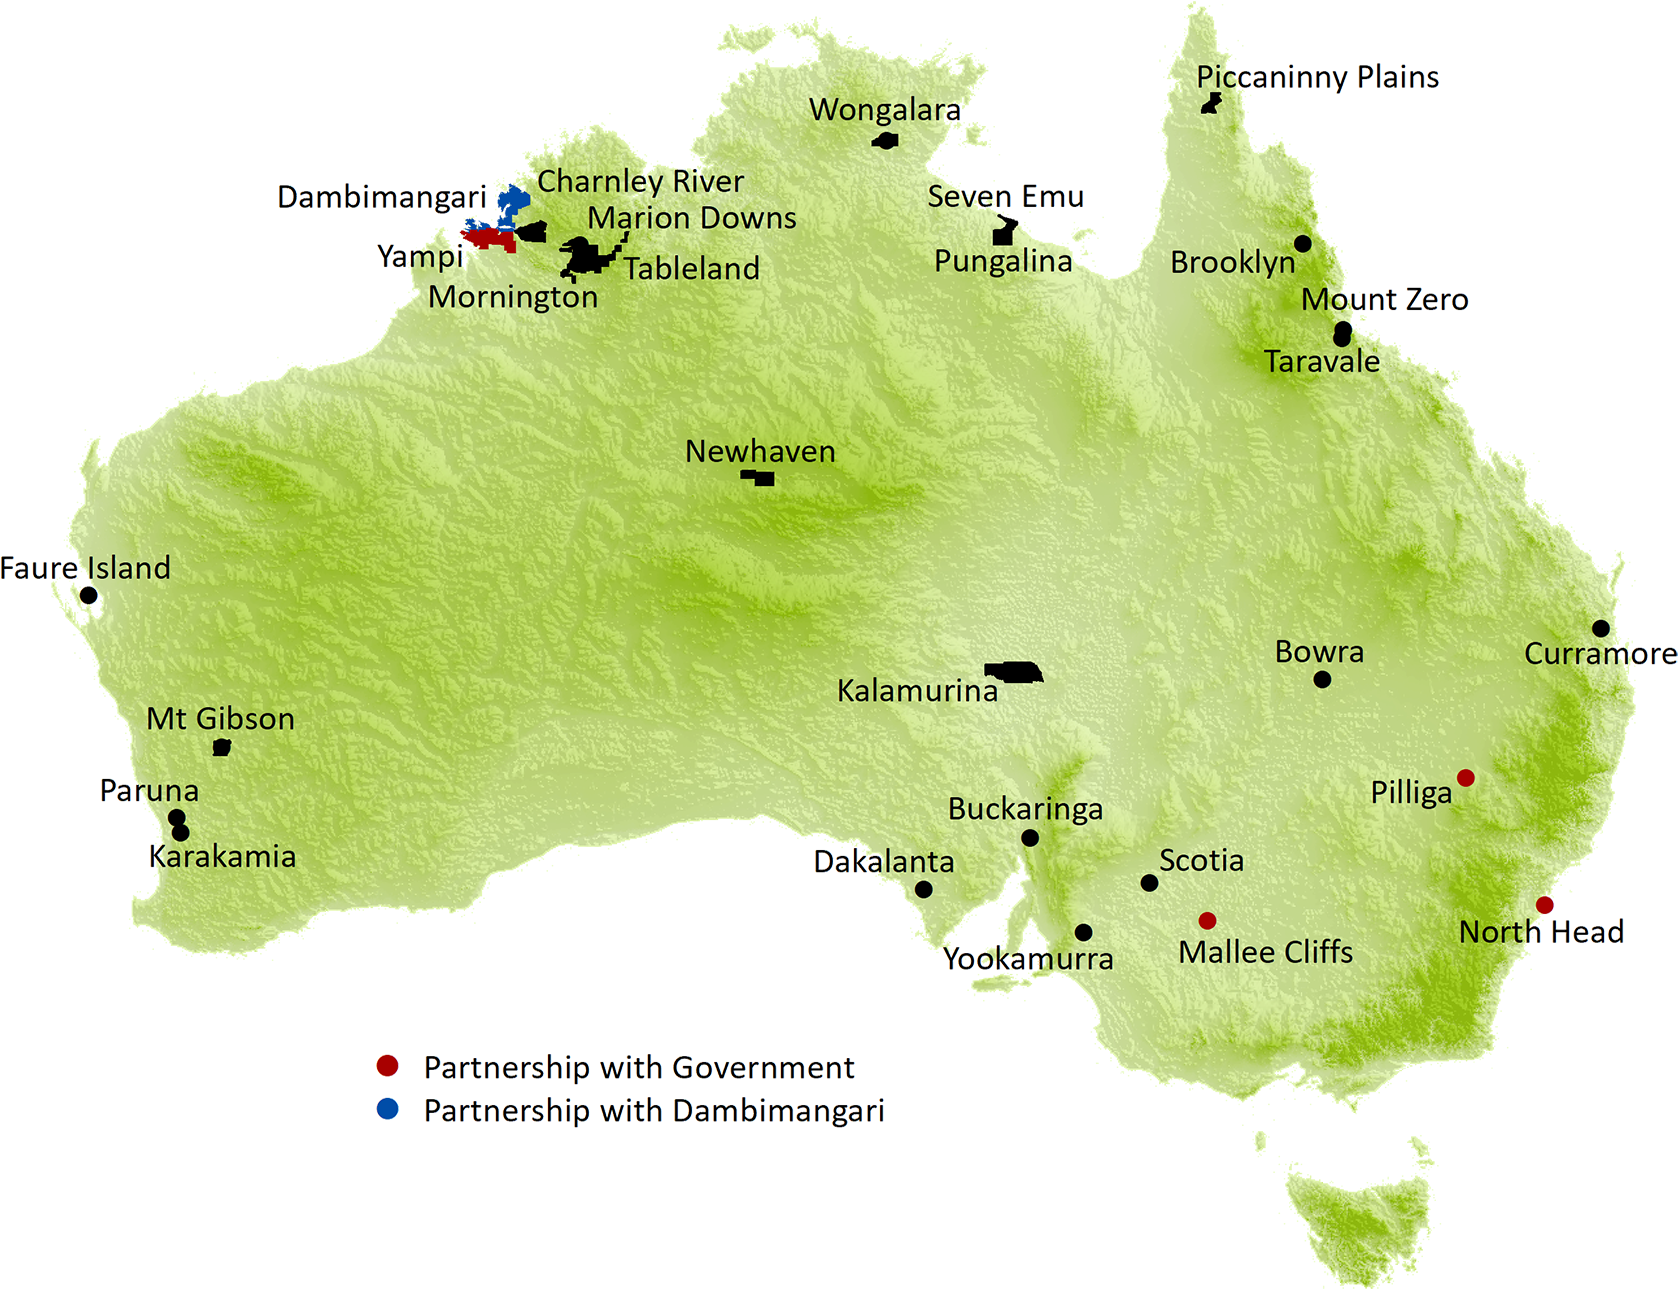 Природное наследие австралии. Объекты Всемирного наследия ЮНЕСКО В Австралии на карте. 5 Объектов ЮНЕСКО В Австралии на карте. Объекты Всемирного природного наследия ЮНЕСКО В Австралии на карте. Всемирное наследие ЮНЕСКО Австралия на карте.